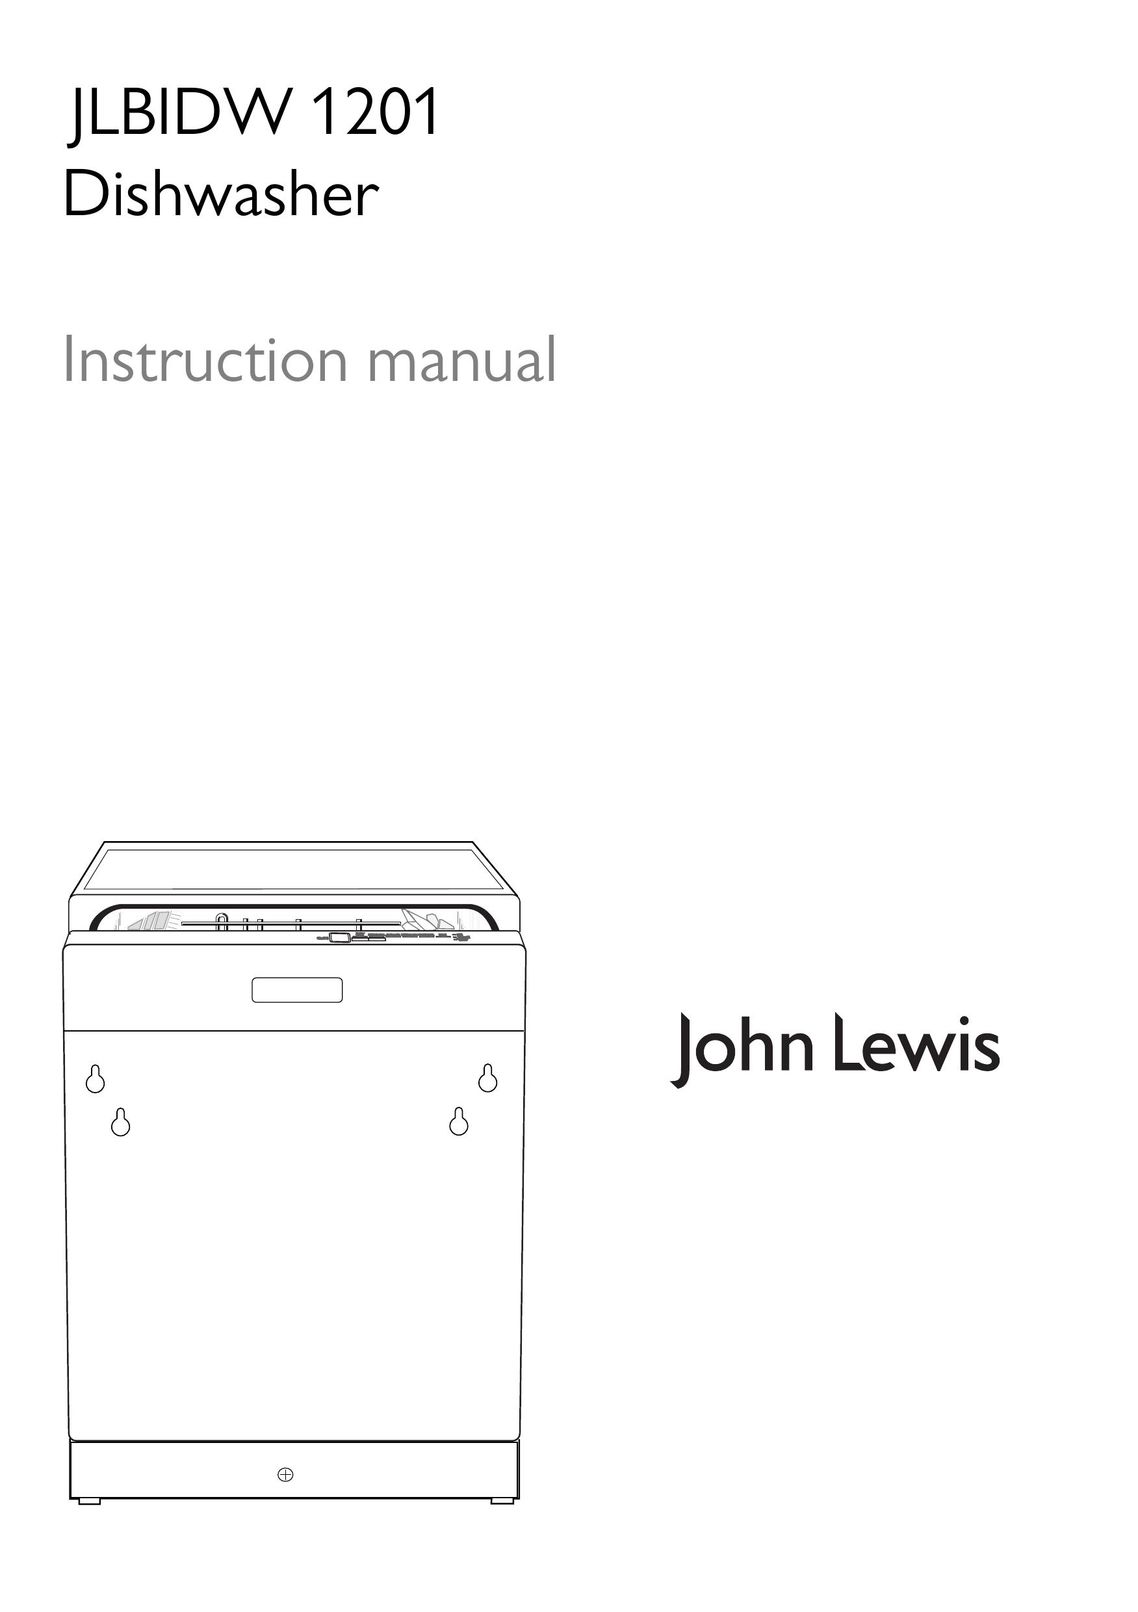 John Lewis JLBIDW 1201 Dishwasher User Manual